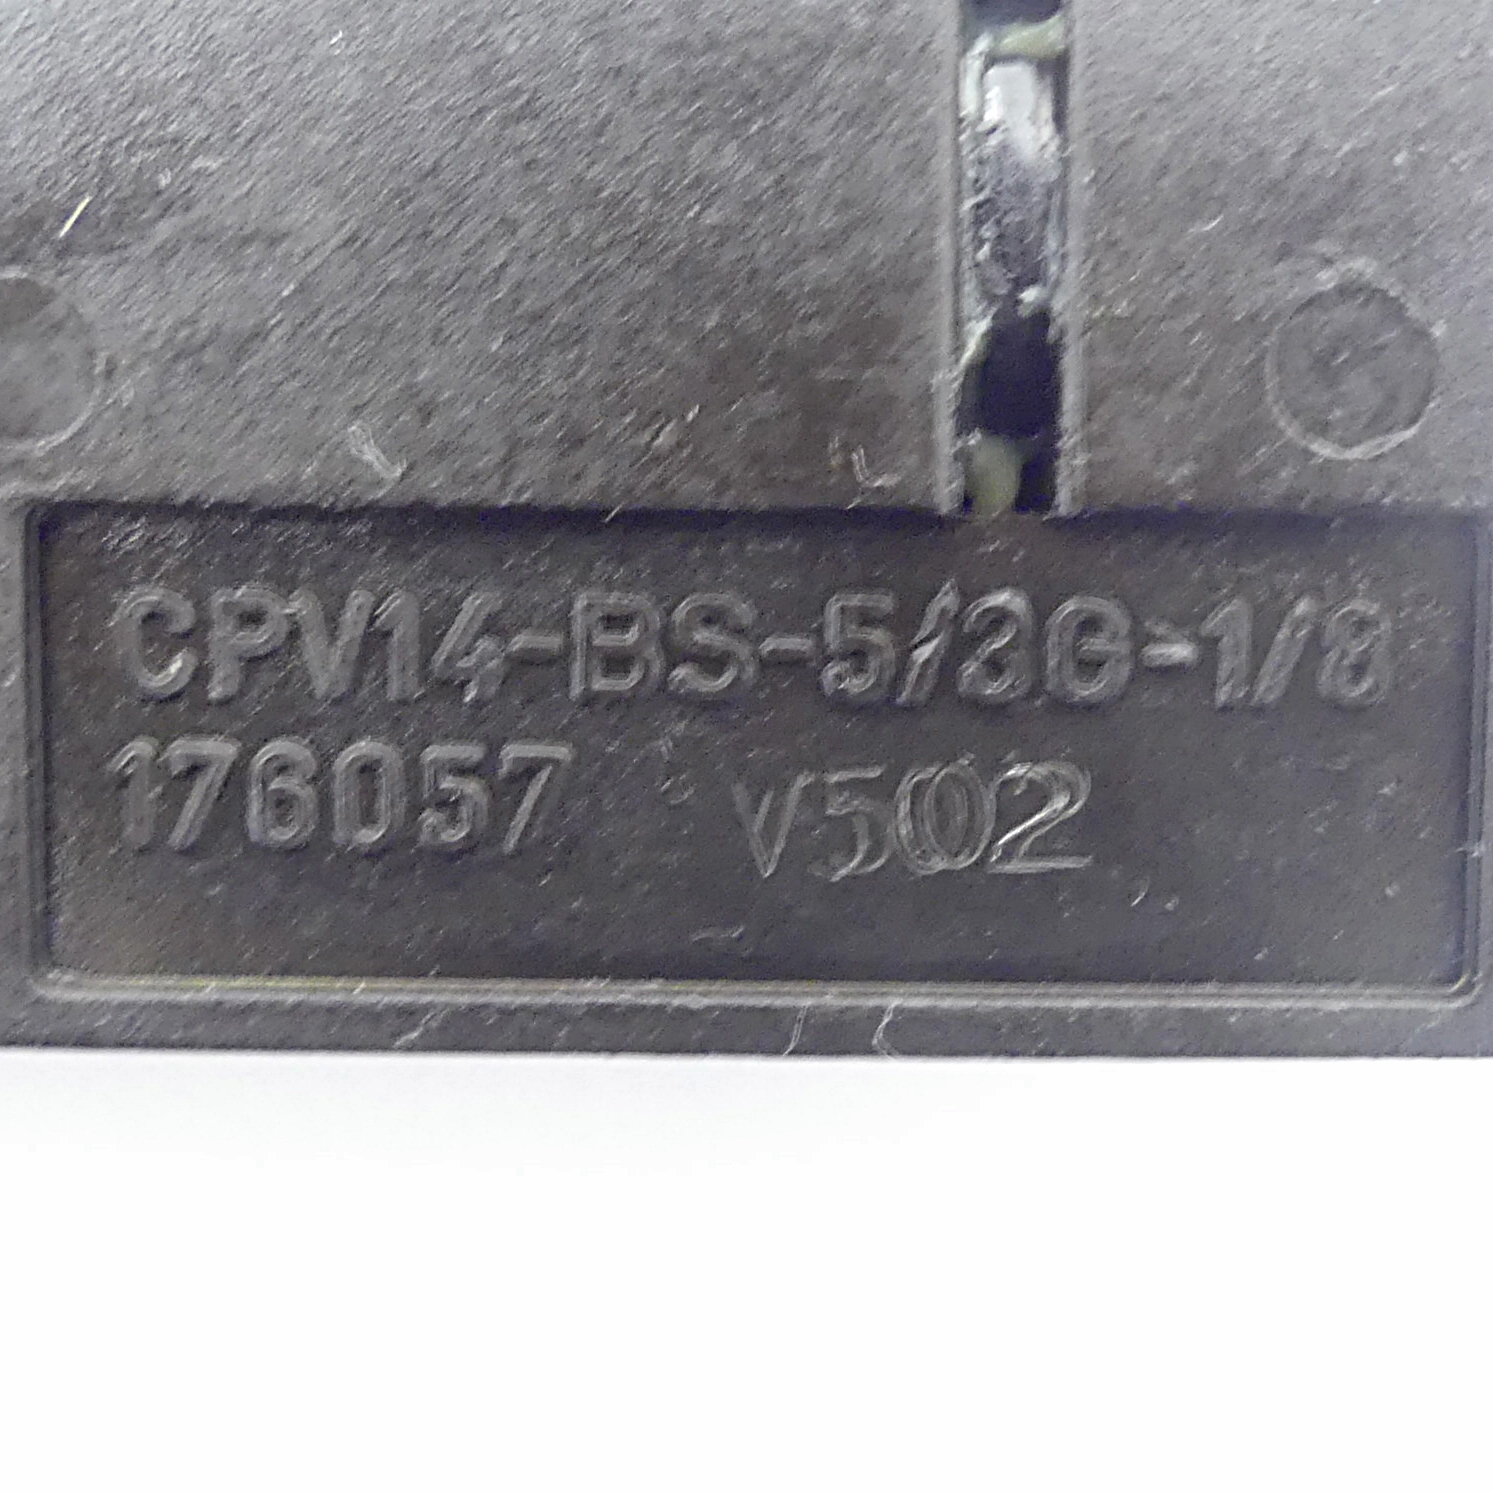 2 Stück Ventilbausätze CPV14-BS-5/3G-1/8 